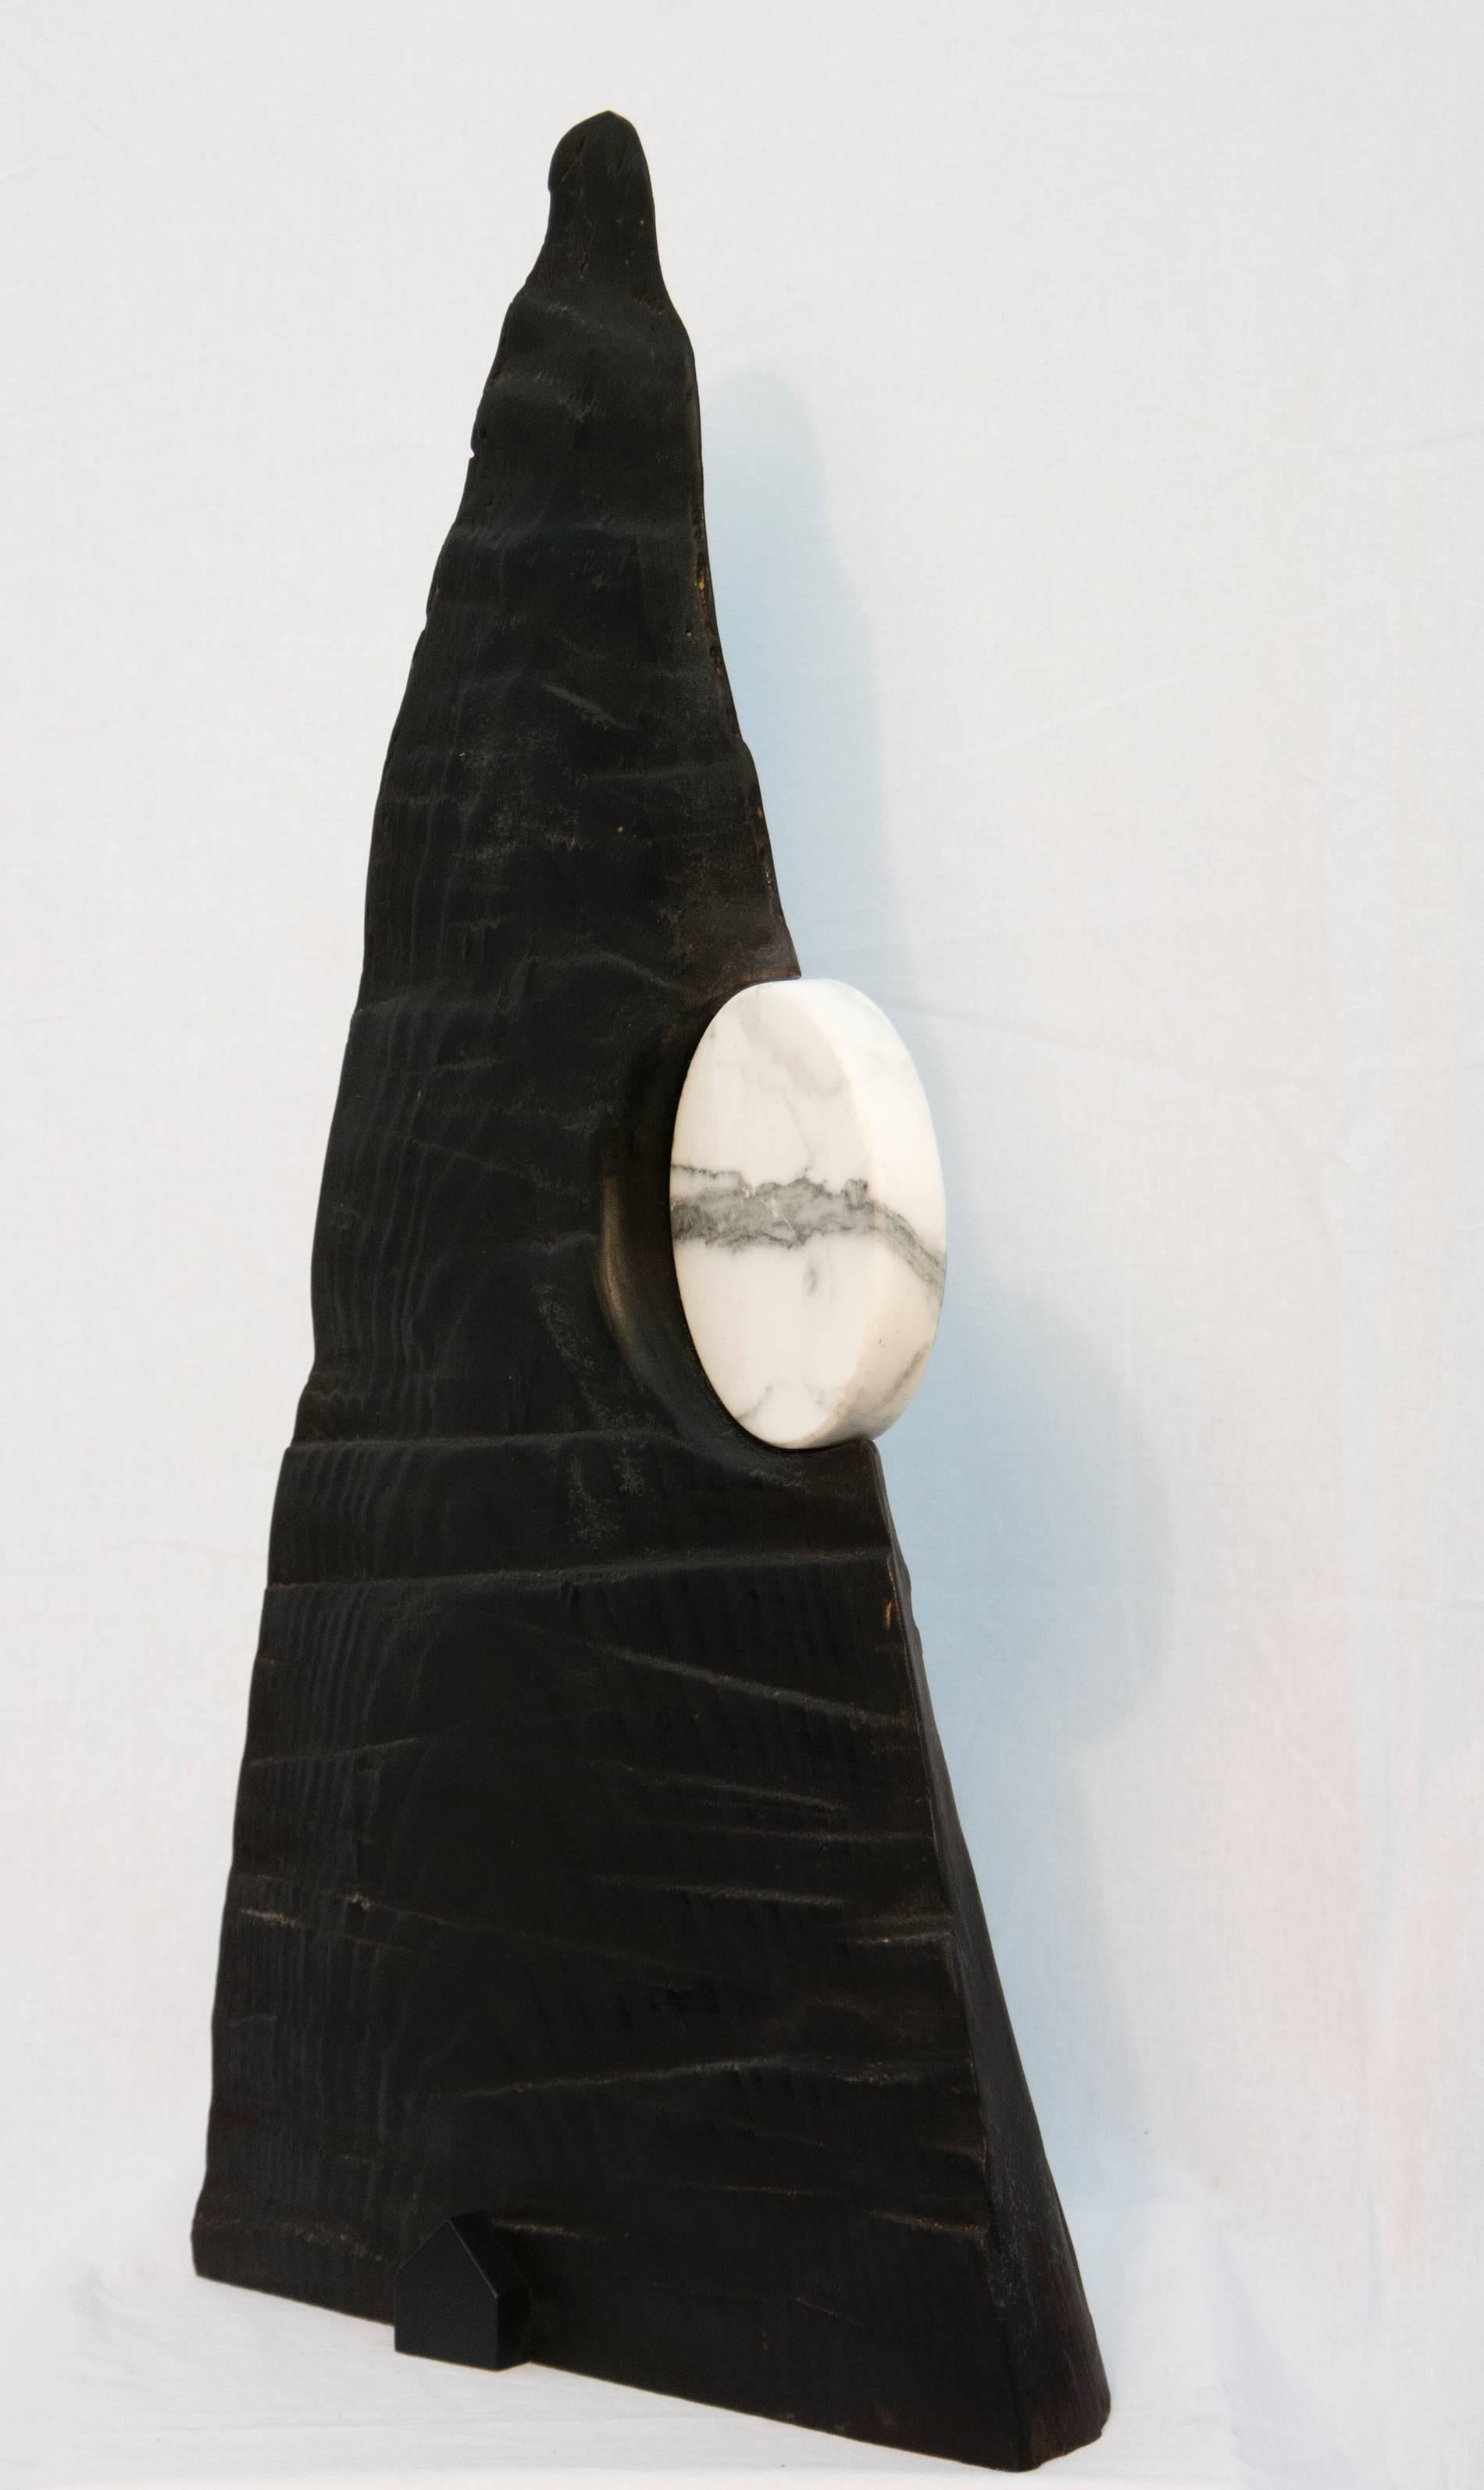 Edward Falkenberg Abstract Sculpture - Moon - dynamic, dark, modern, contemporary, abstract, wooden sculpture